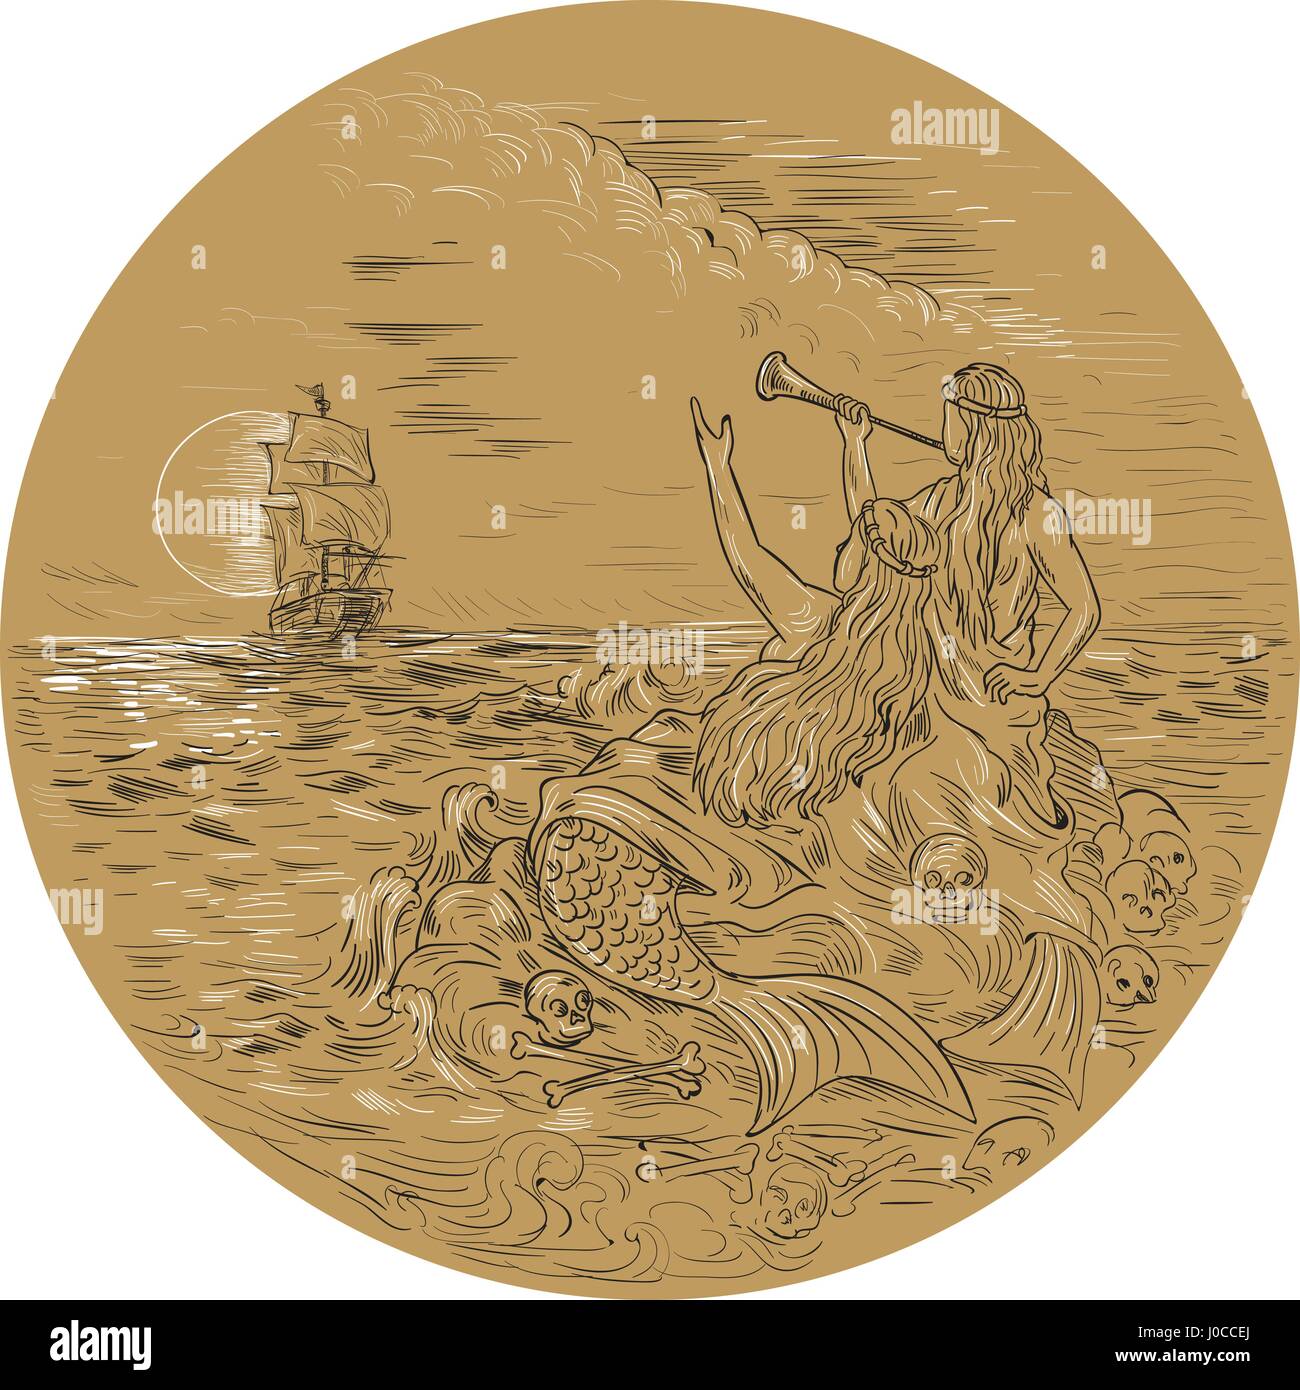 Zeichnung Skizze Stil Illustration zwei Sirenen auf einer Insel, winken, rufen ein Großsegler im inneren Kreis mit Vollmond im Hintergrund. Stock Vektor